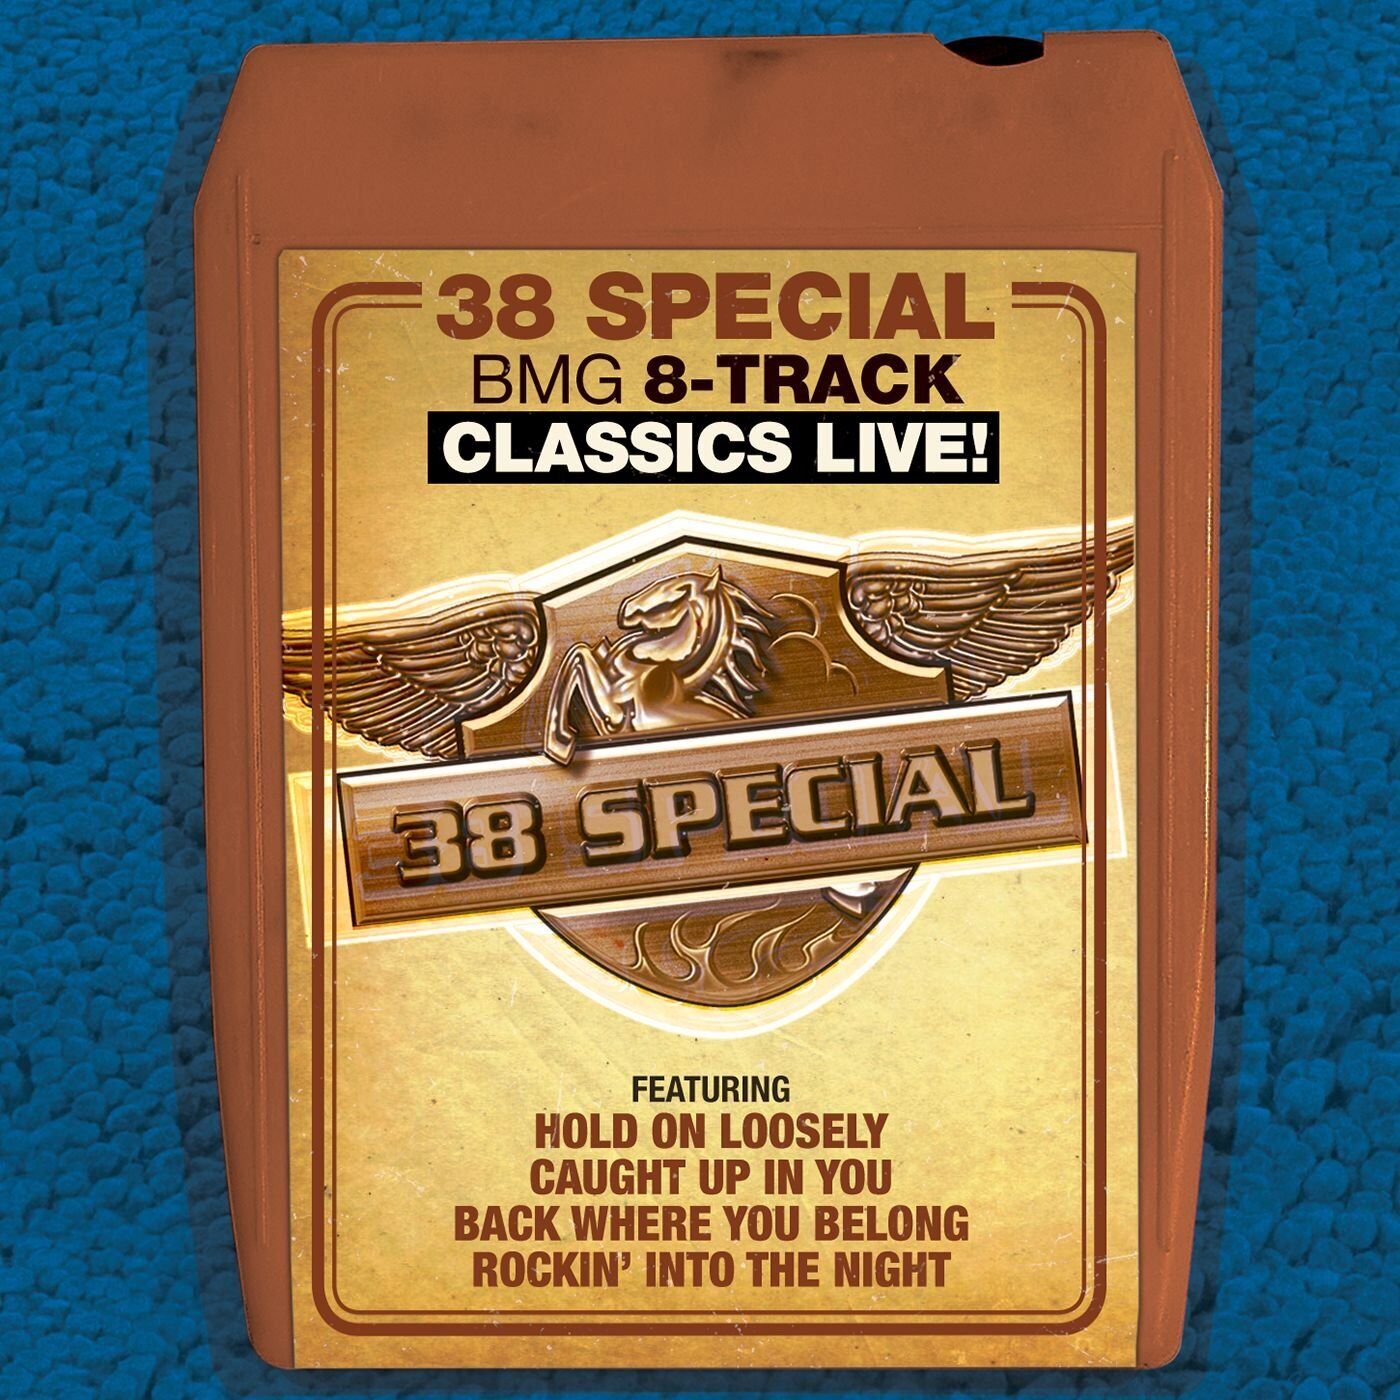 .38 Special Bmg 8-track Classics Live (CD)